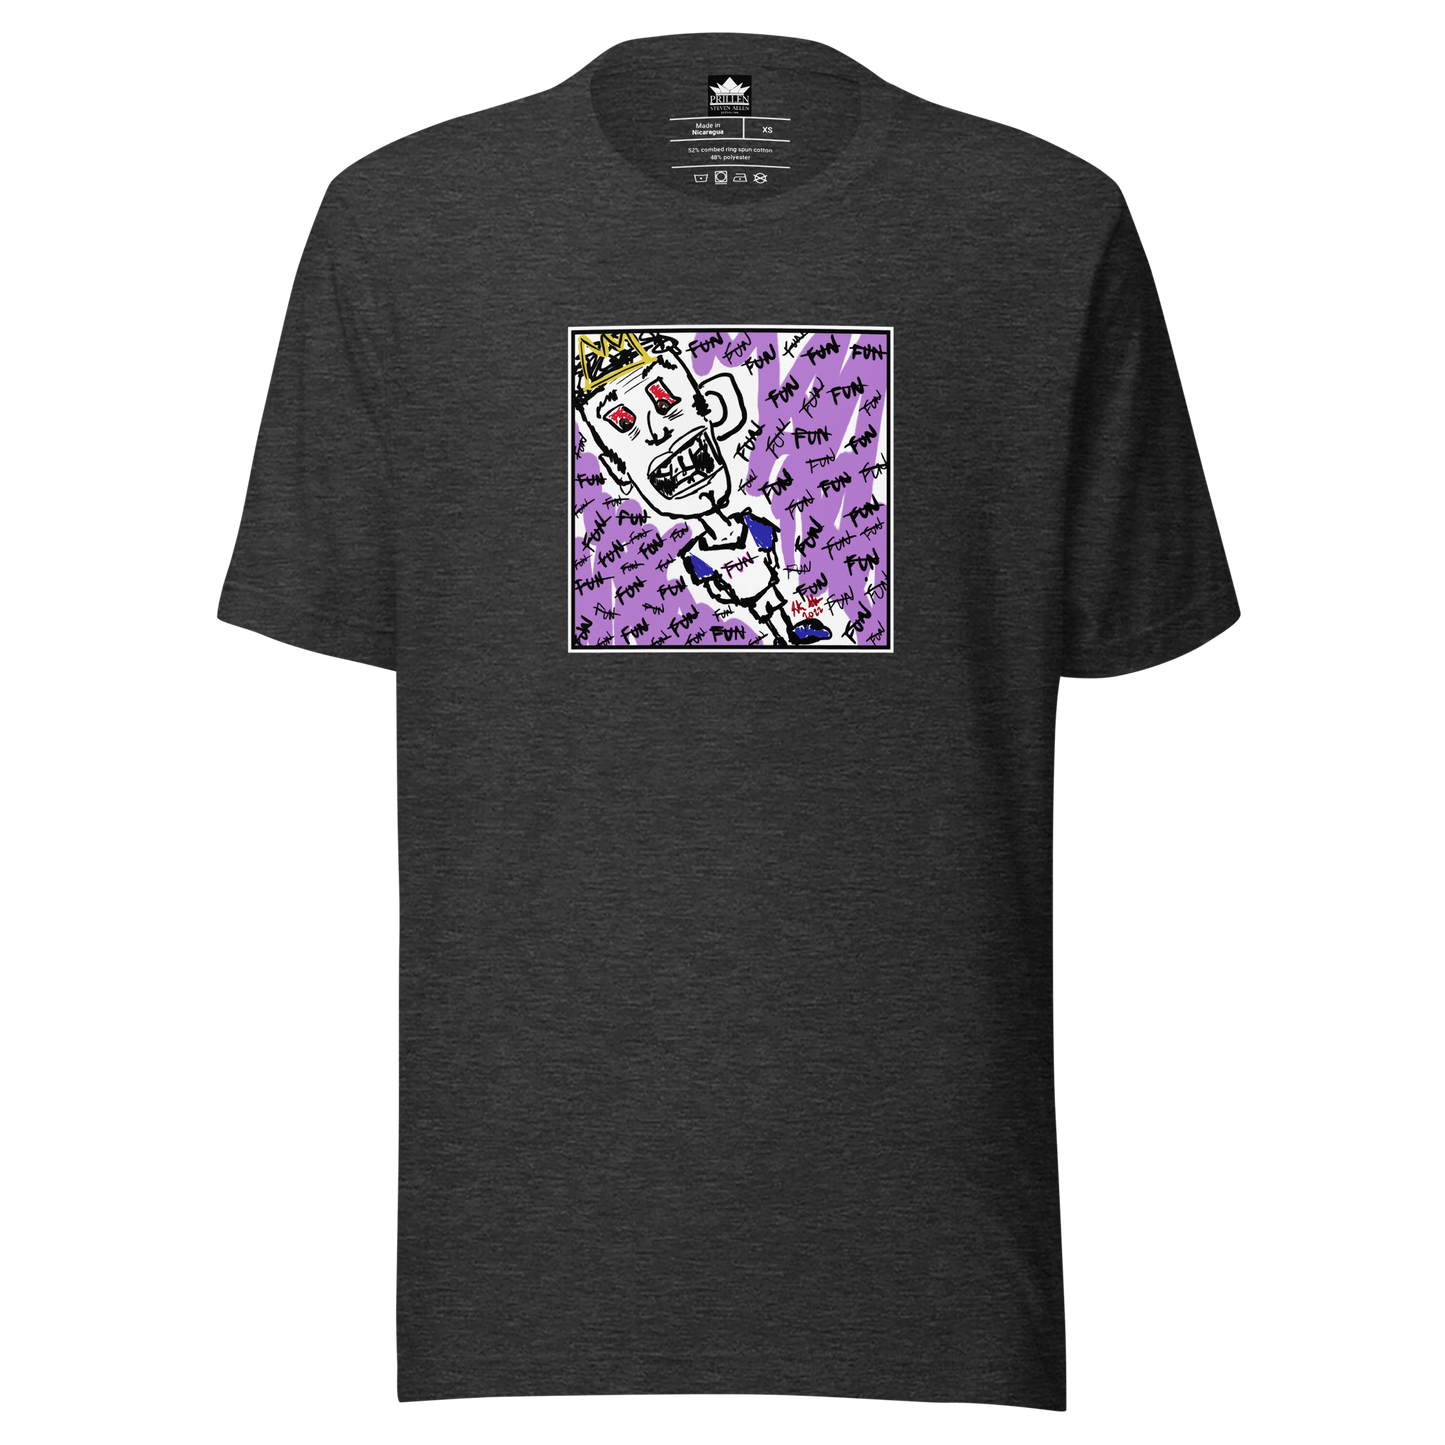 Prillen - Steven Allen - Not Fun - Painting T-Shirt